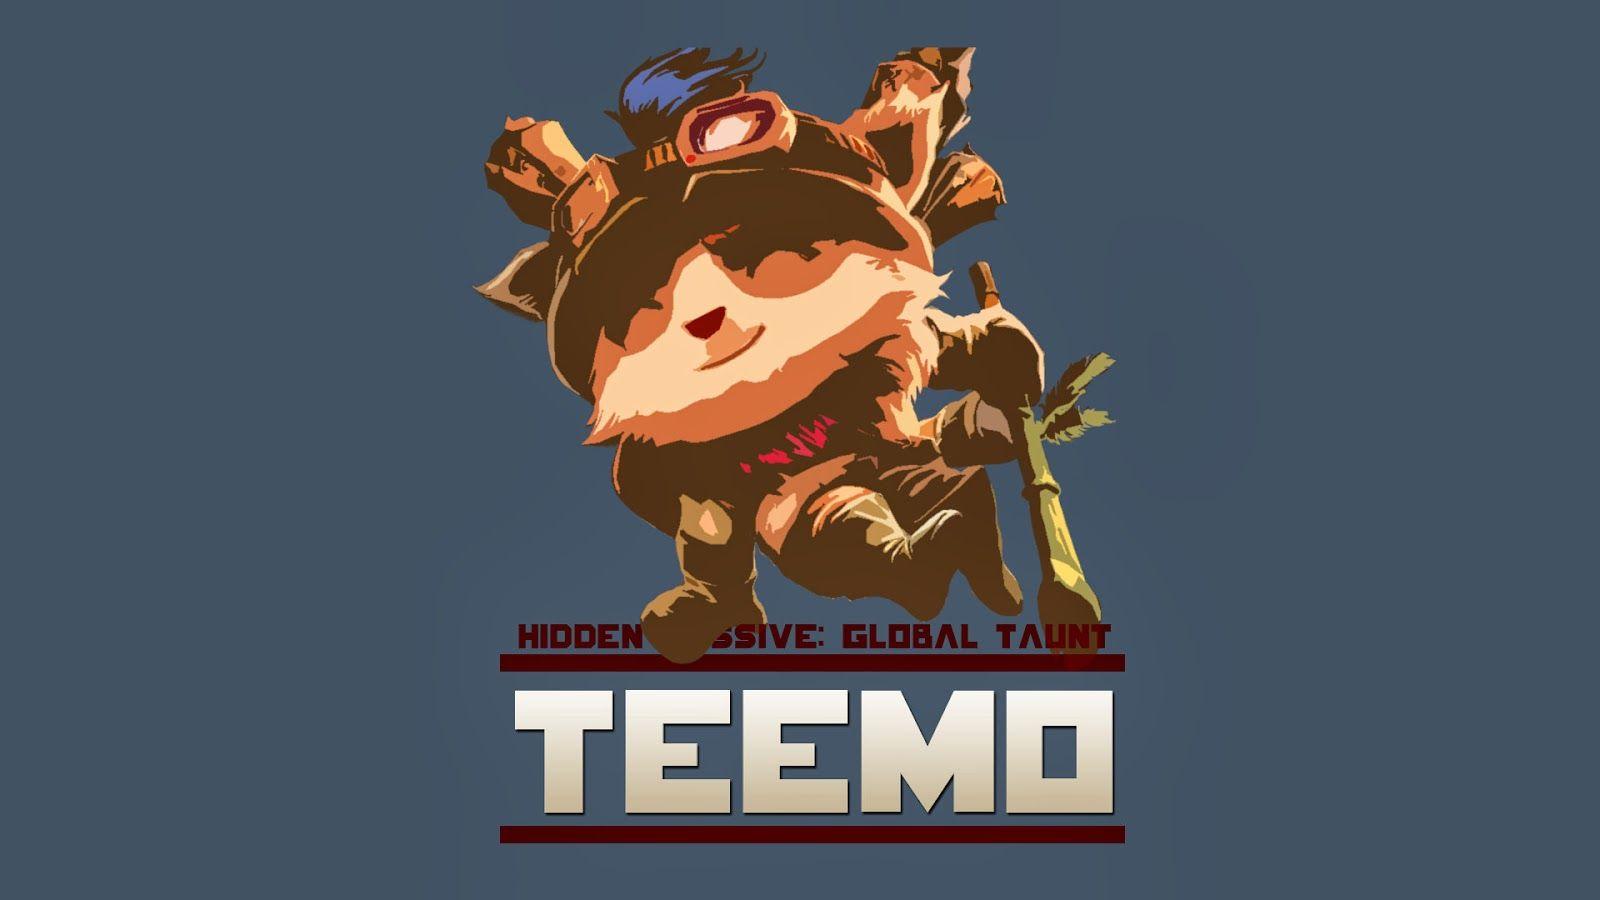 Teemo League of Legends Wallpaper, Teemo Desktop Wallpaper